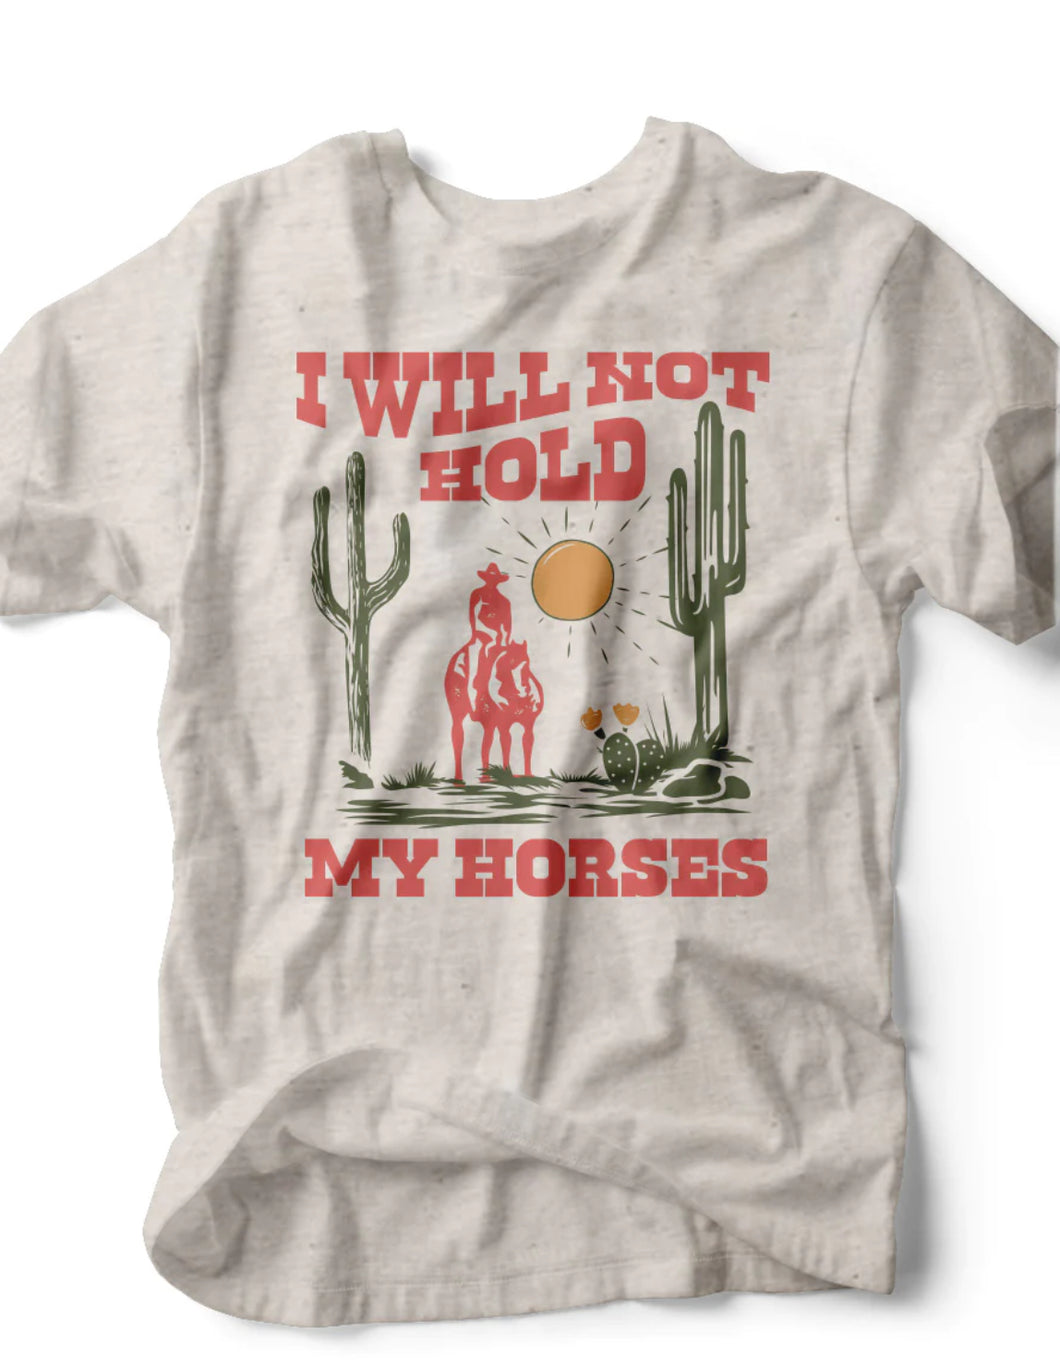 I WILL NOT Hold My Horses Tee